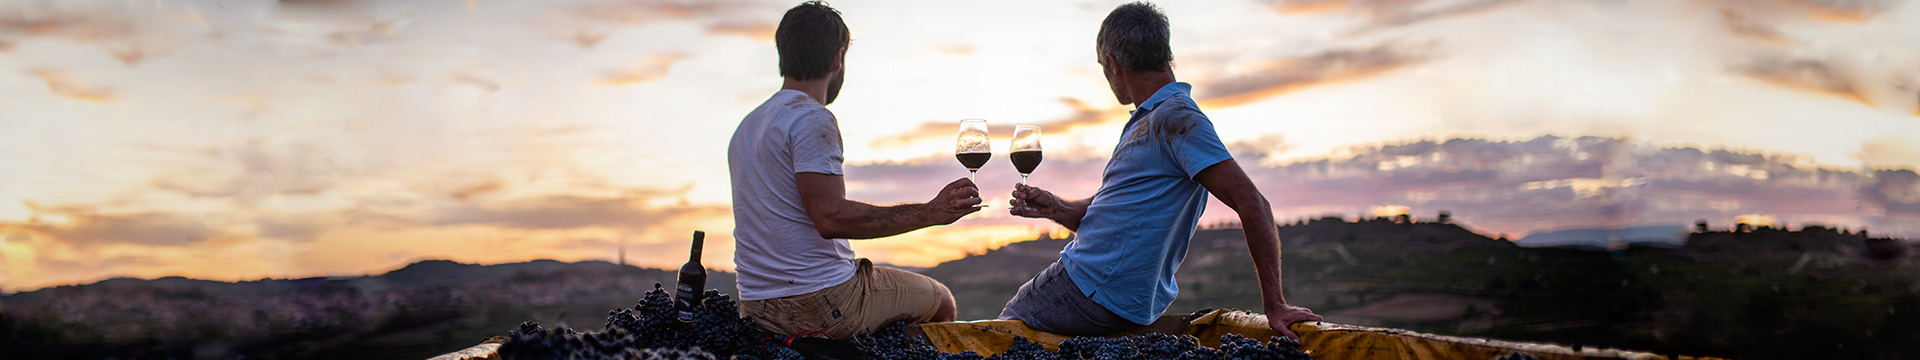 Ver y vivir la vendimia en los viñedos de Vintae con los #viñaterosviajeros